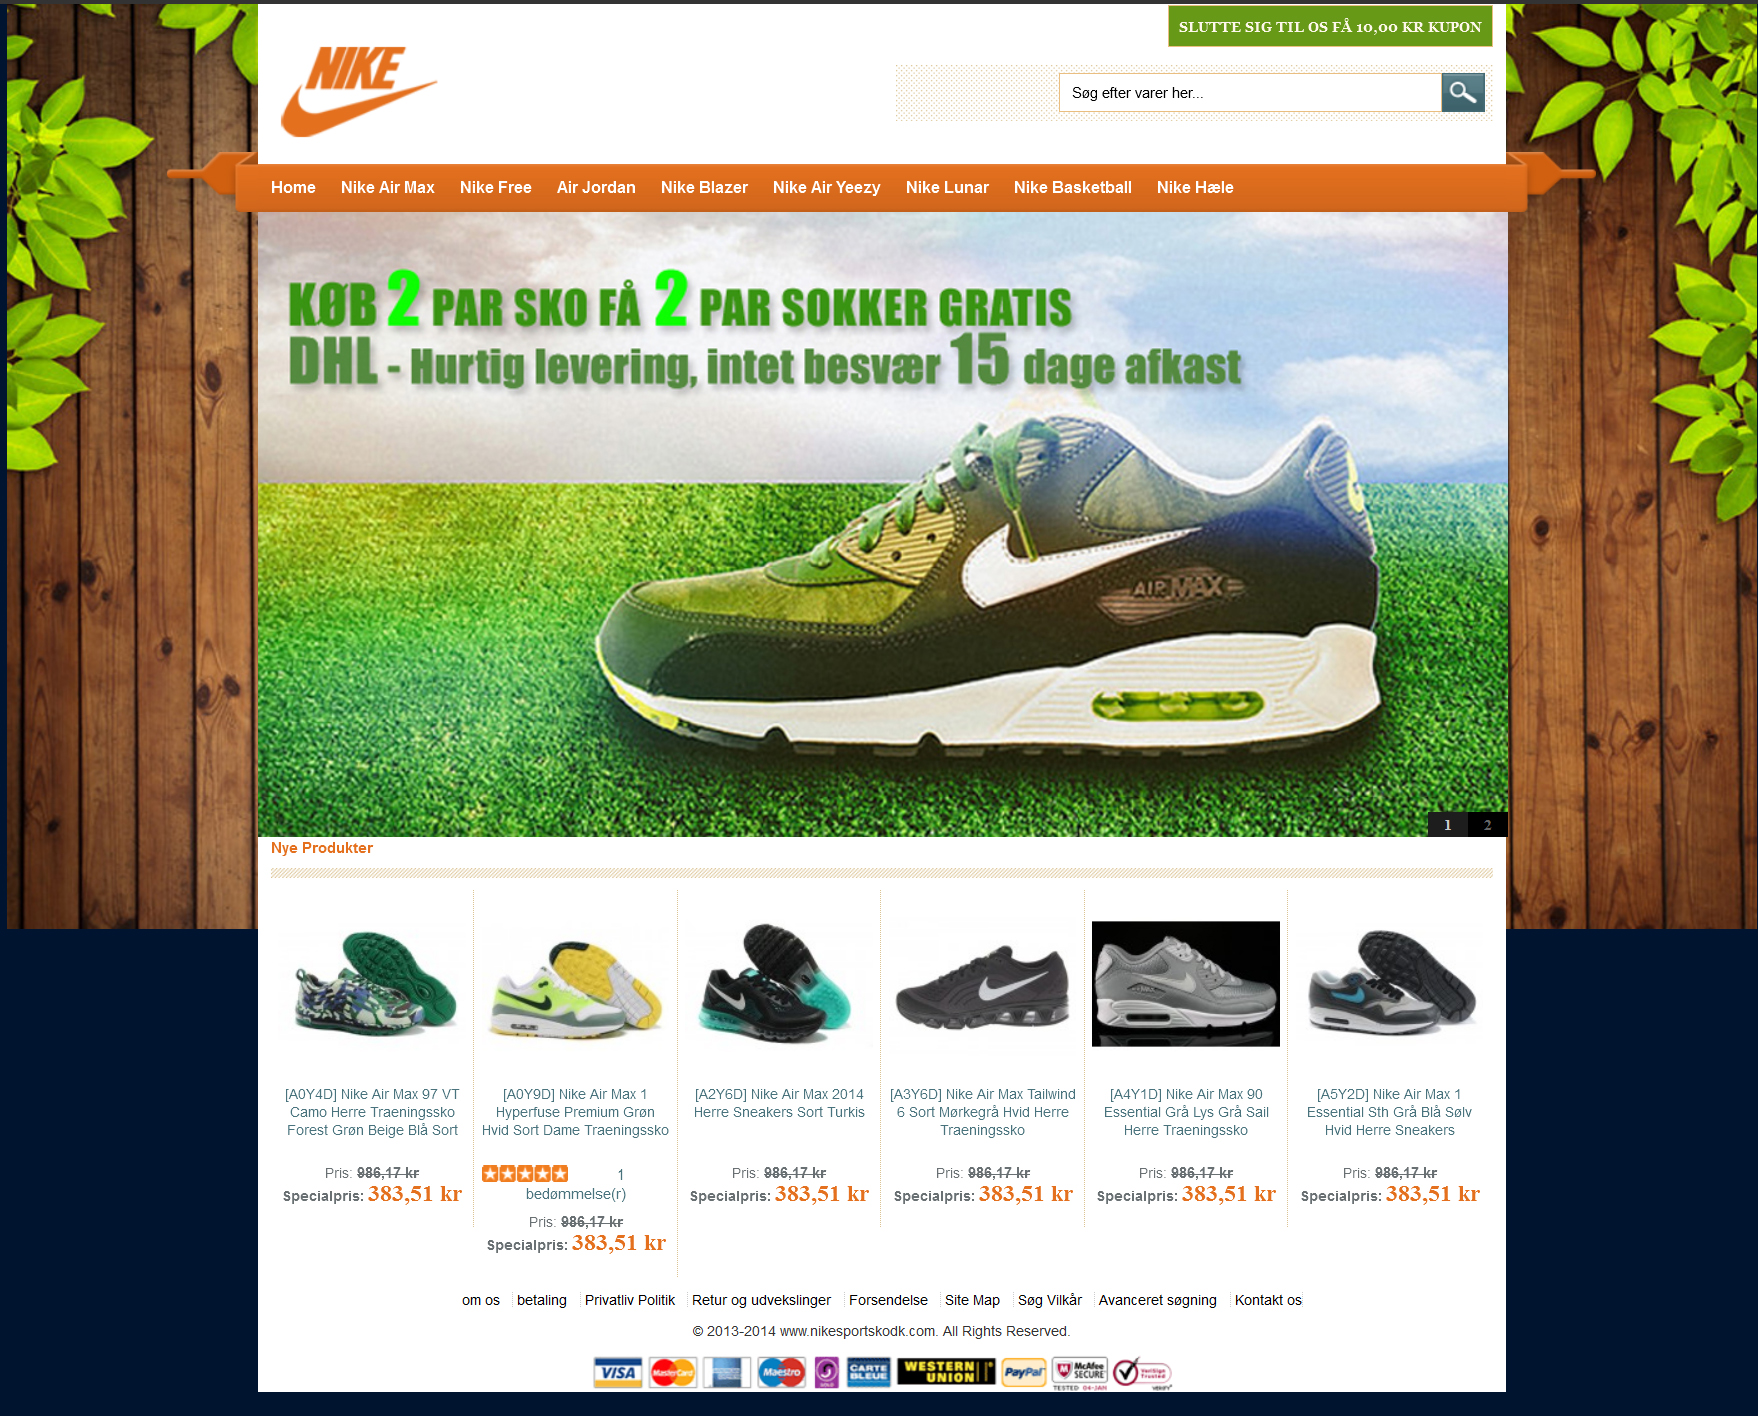 Falsk Nike webshop